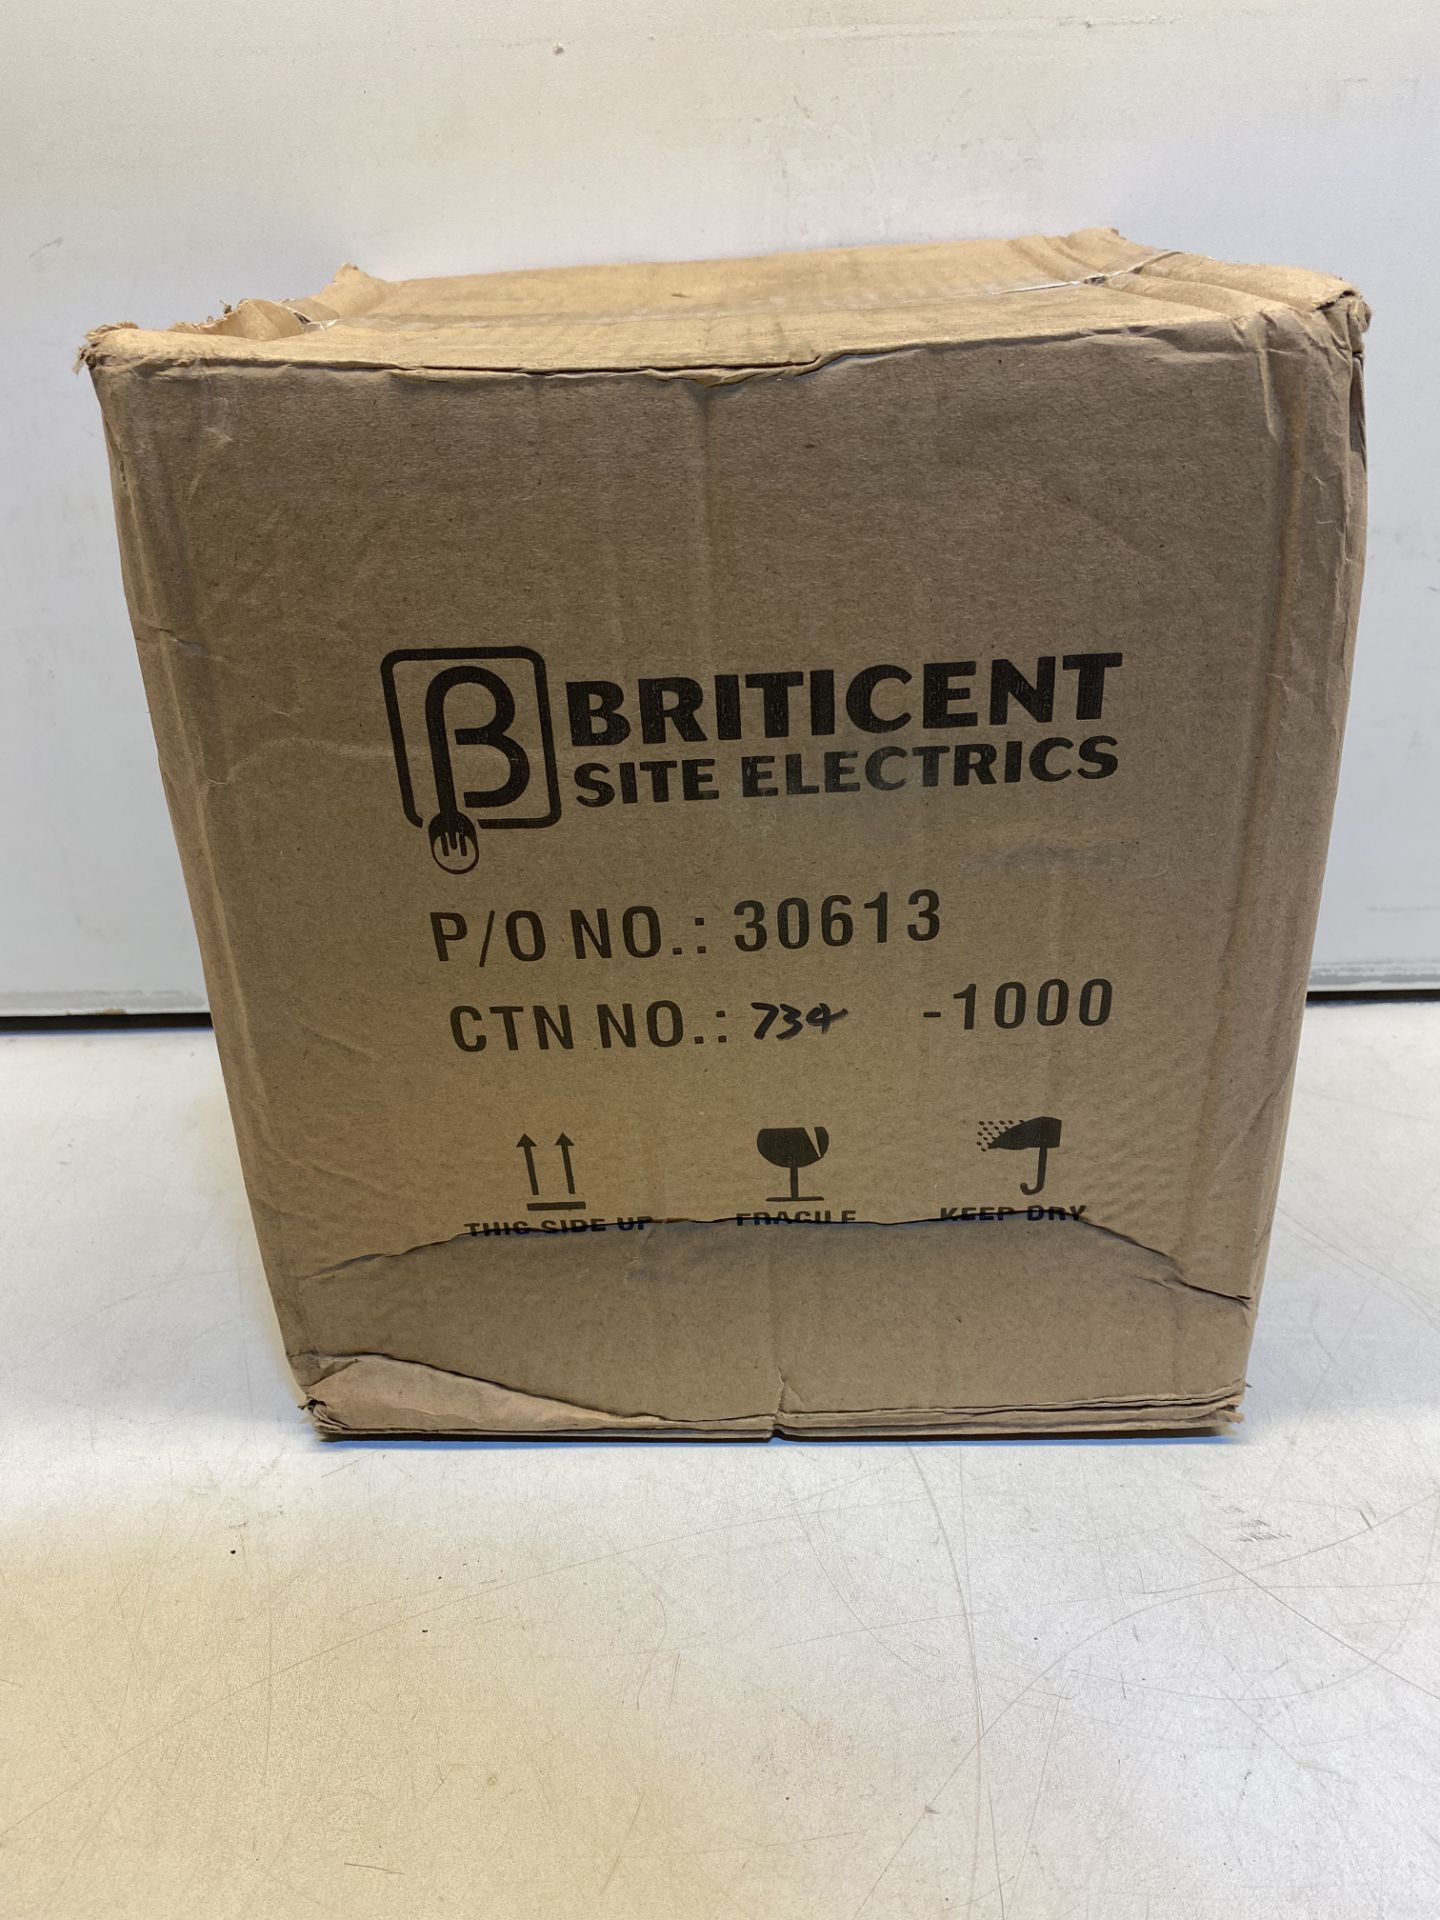 4 x Briticent Site Electrics 3300VA Portable Tool Transformer | RRP £60